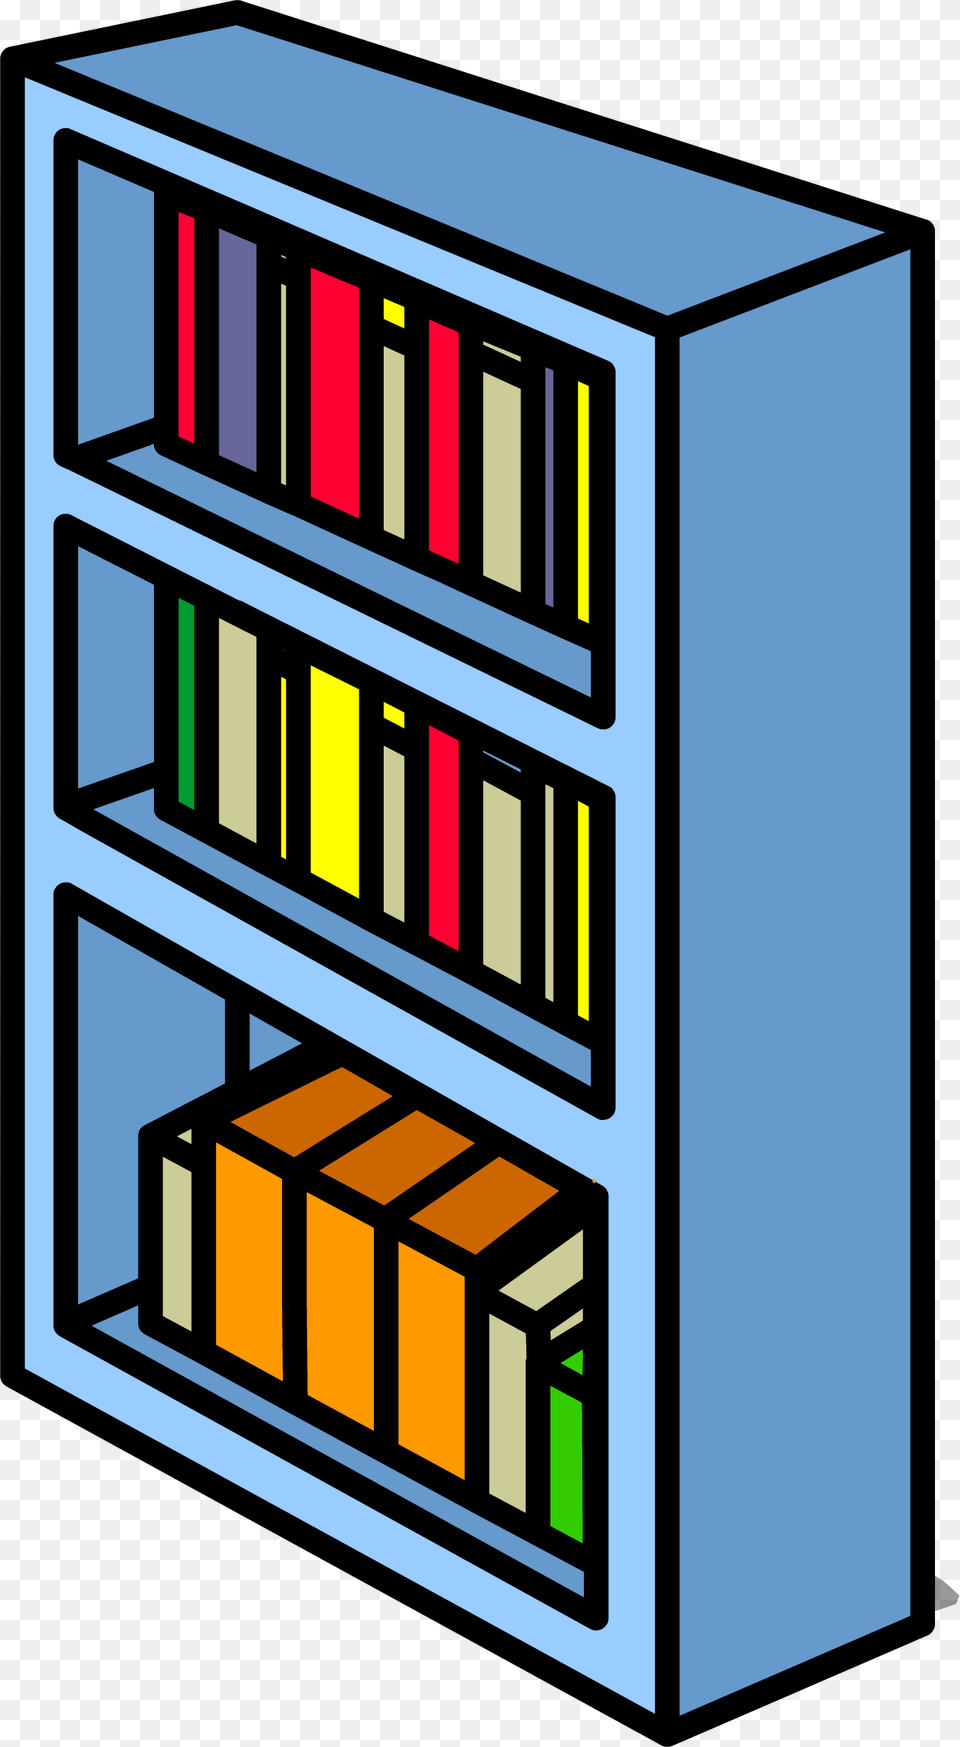 Blue Bookshelf Sprite 006 Bookcase, Furniture, Shelf, Gate, Book Free Transparent Png